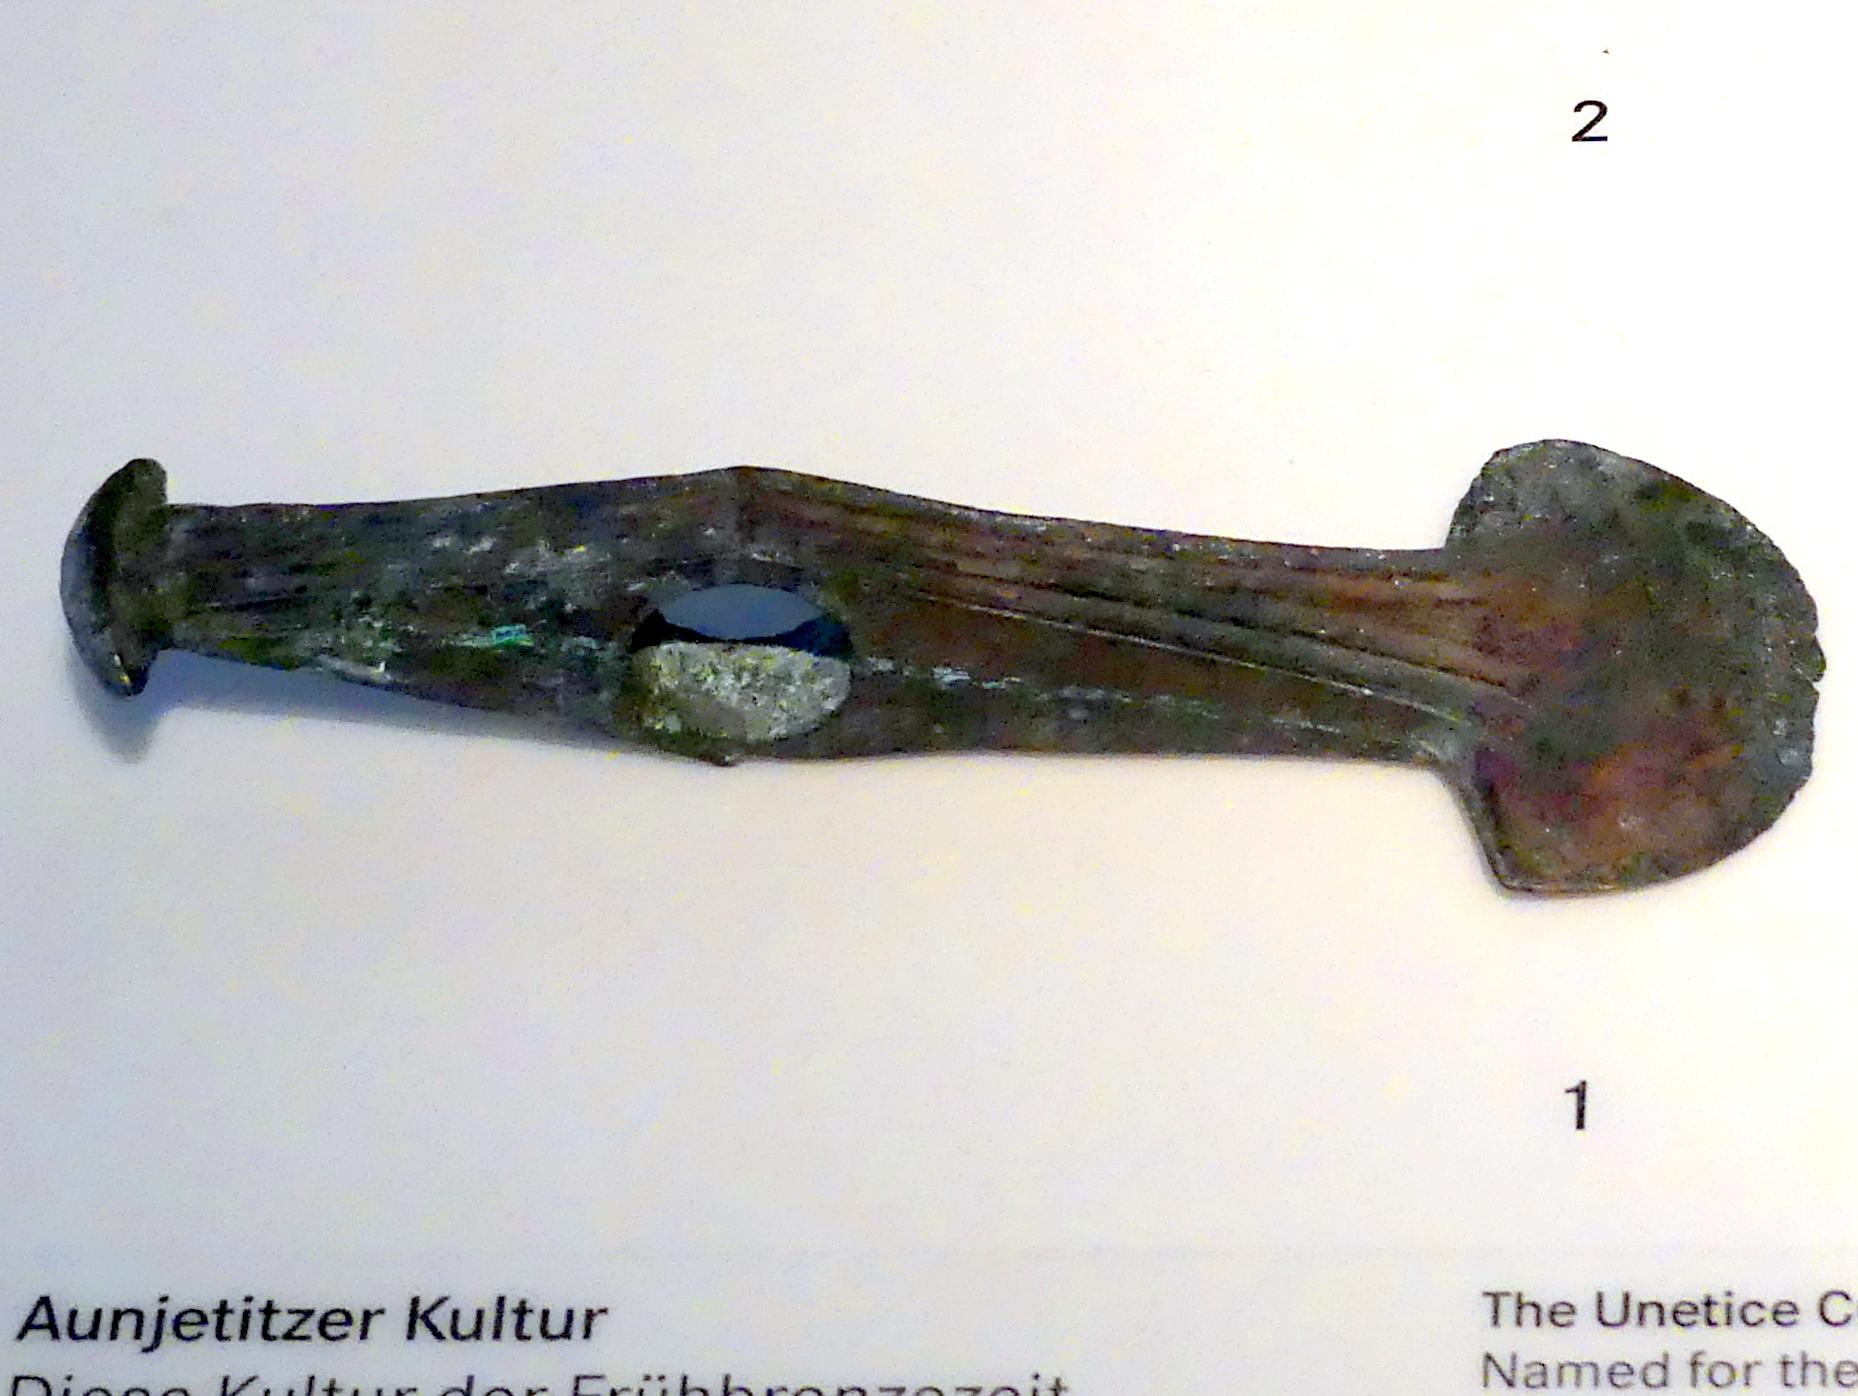 Prunkaxt, Frühe Bronzezeit, 3365 - 1200 v. Chr., 2200 - 1500 v. Chr.